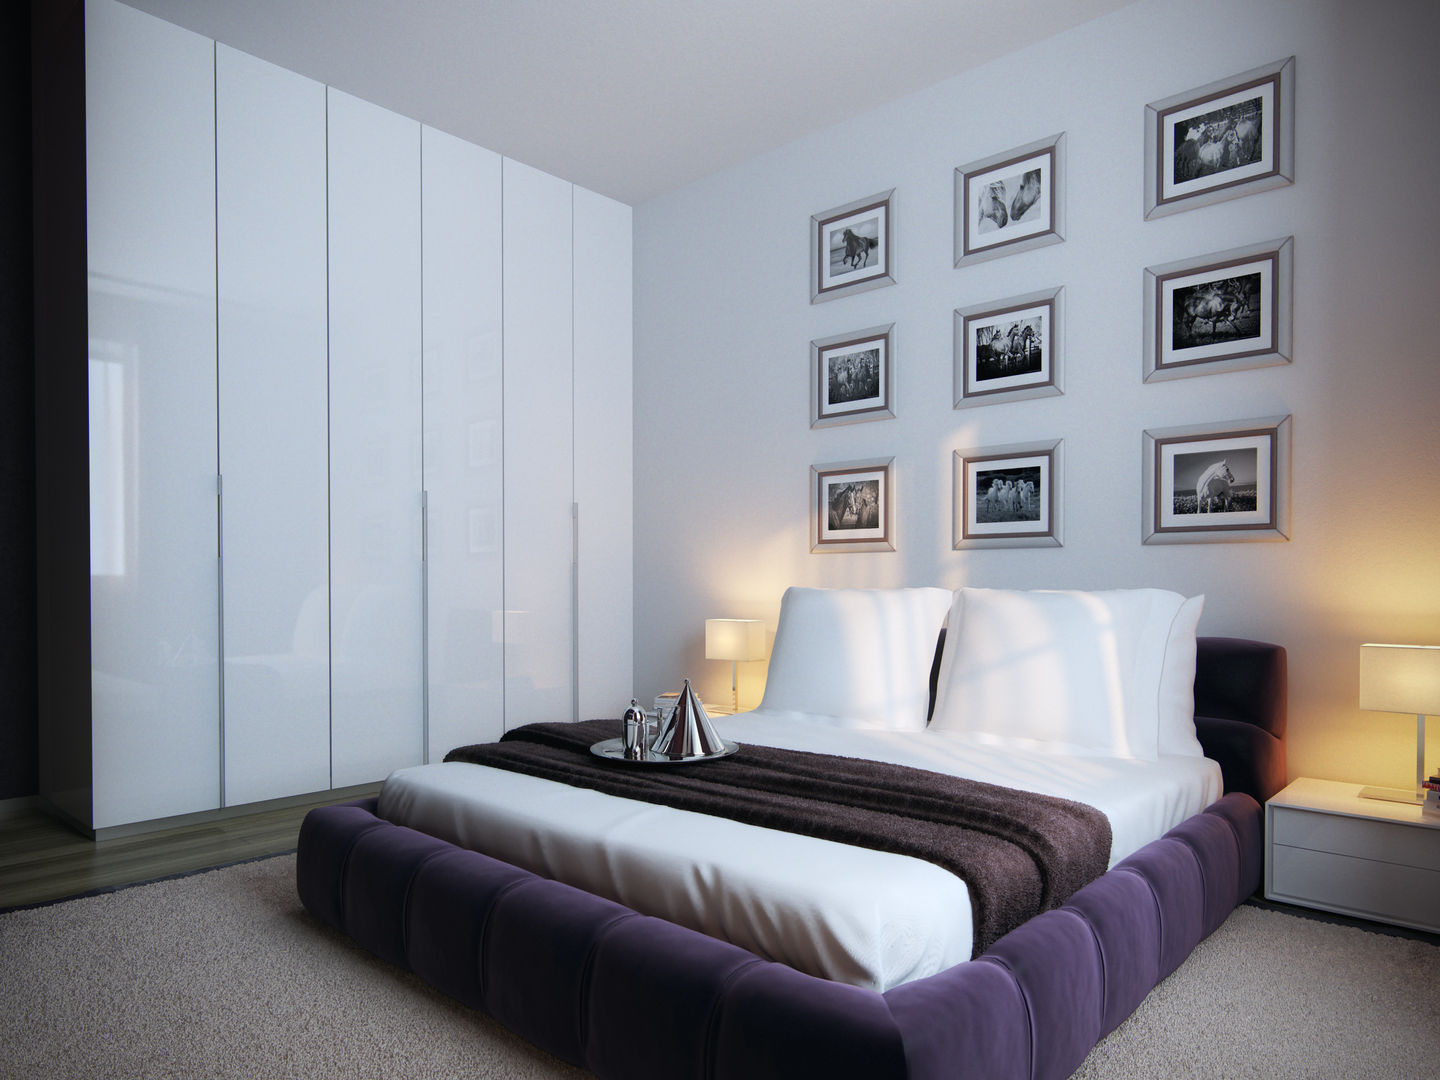 Интерьер дома с винотекой в стиле модерн и шале, A-partmentdesign studio A-partmentdesign studio Minimalist bedroom MDF